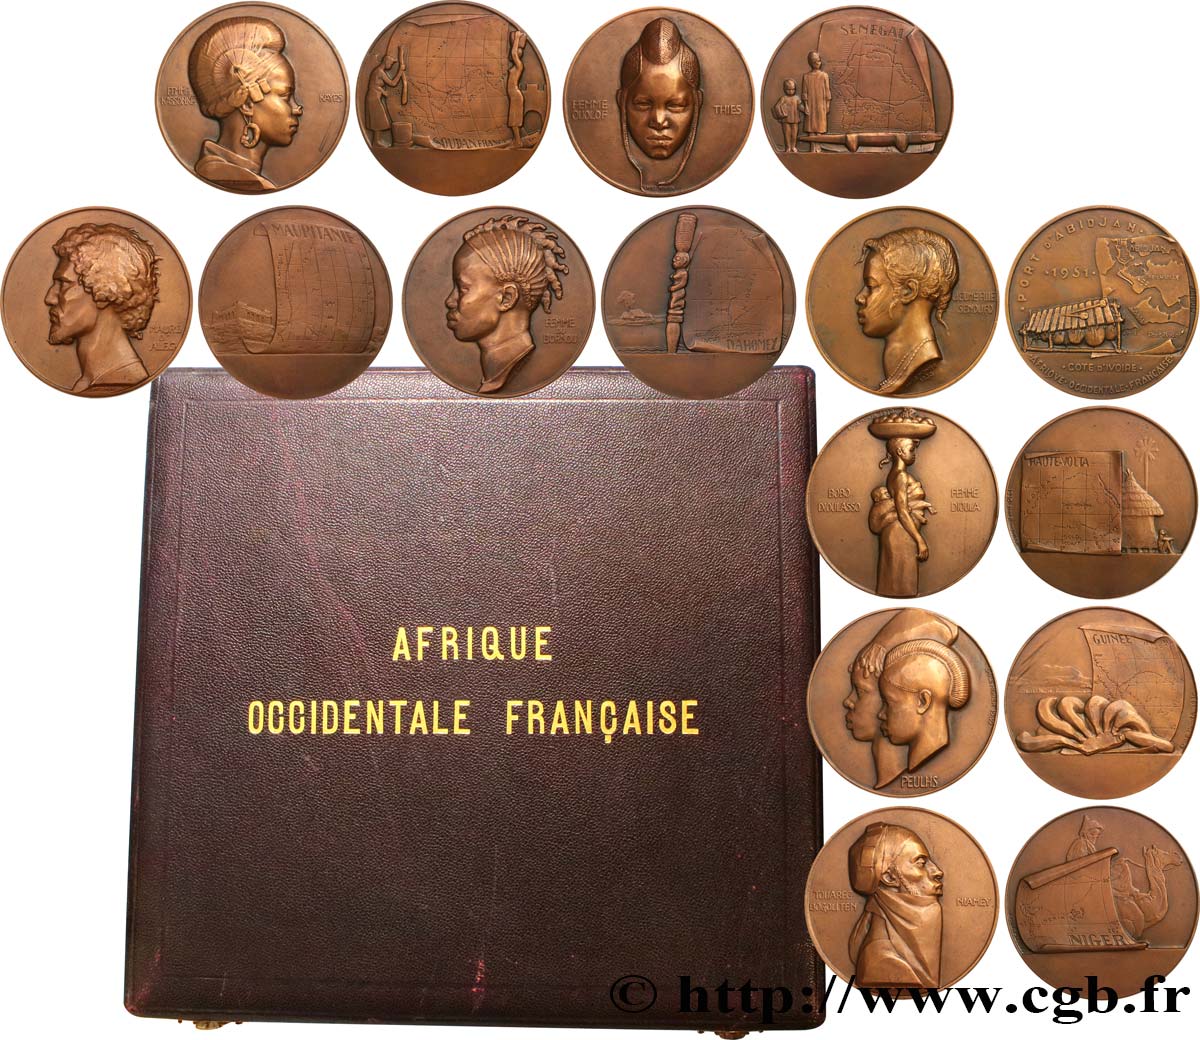 AFRICA FRANCESA DEL OESTE Coffret de 8 médailles, Afrique Occidentale Française, les populations d’Afrique de l’Ouest EBC